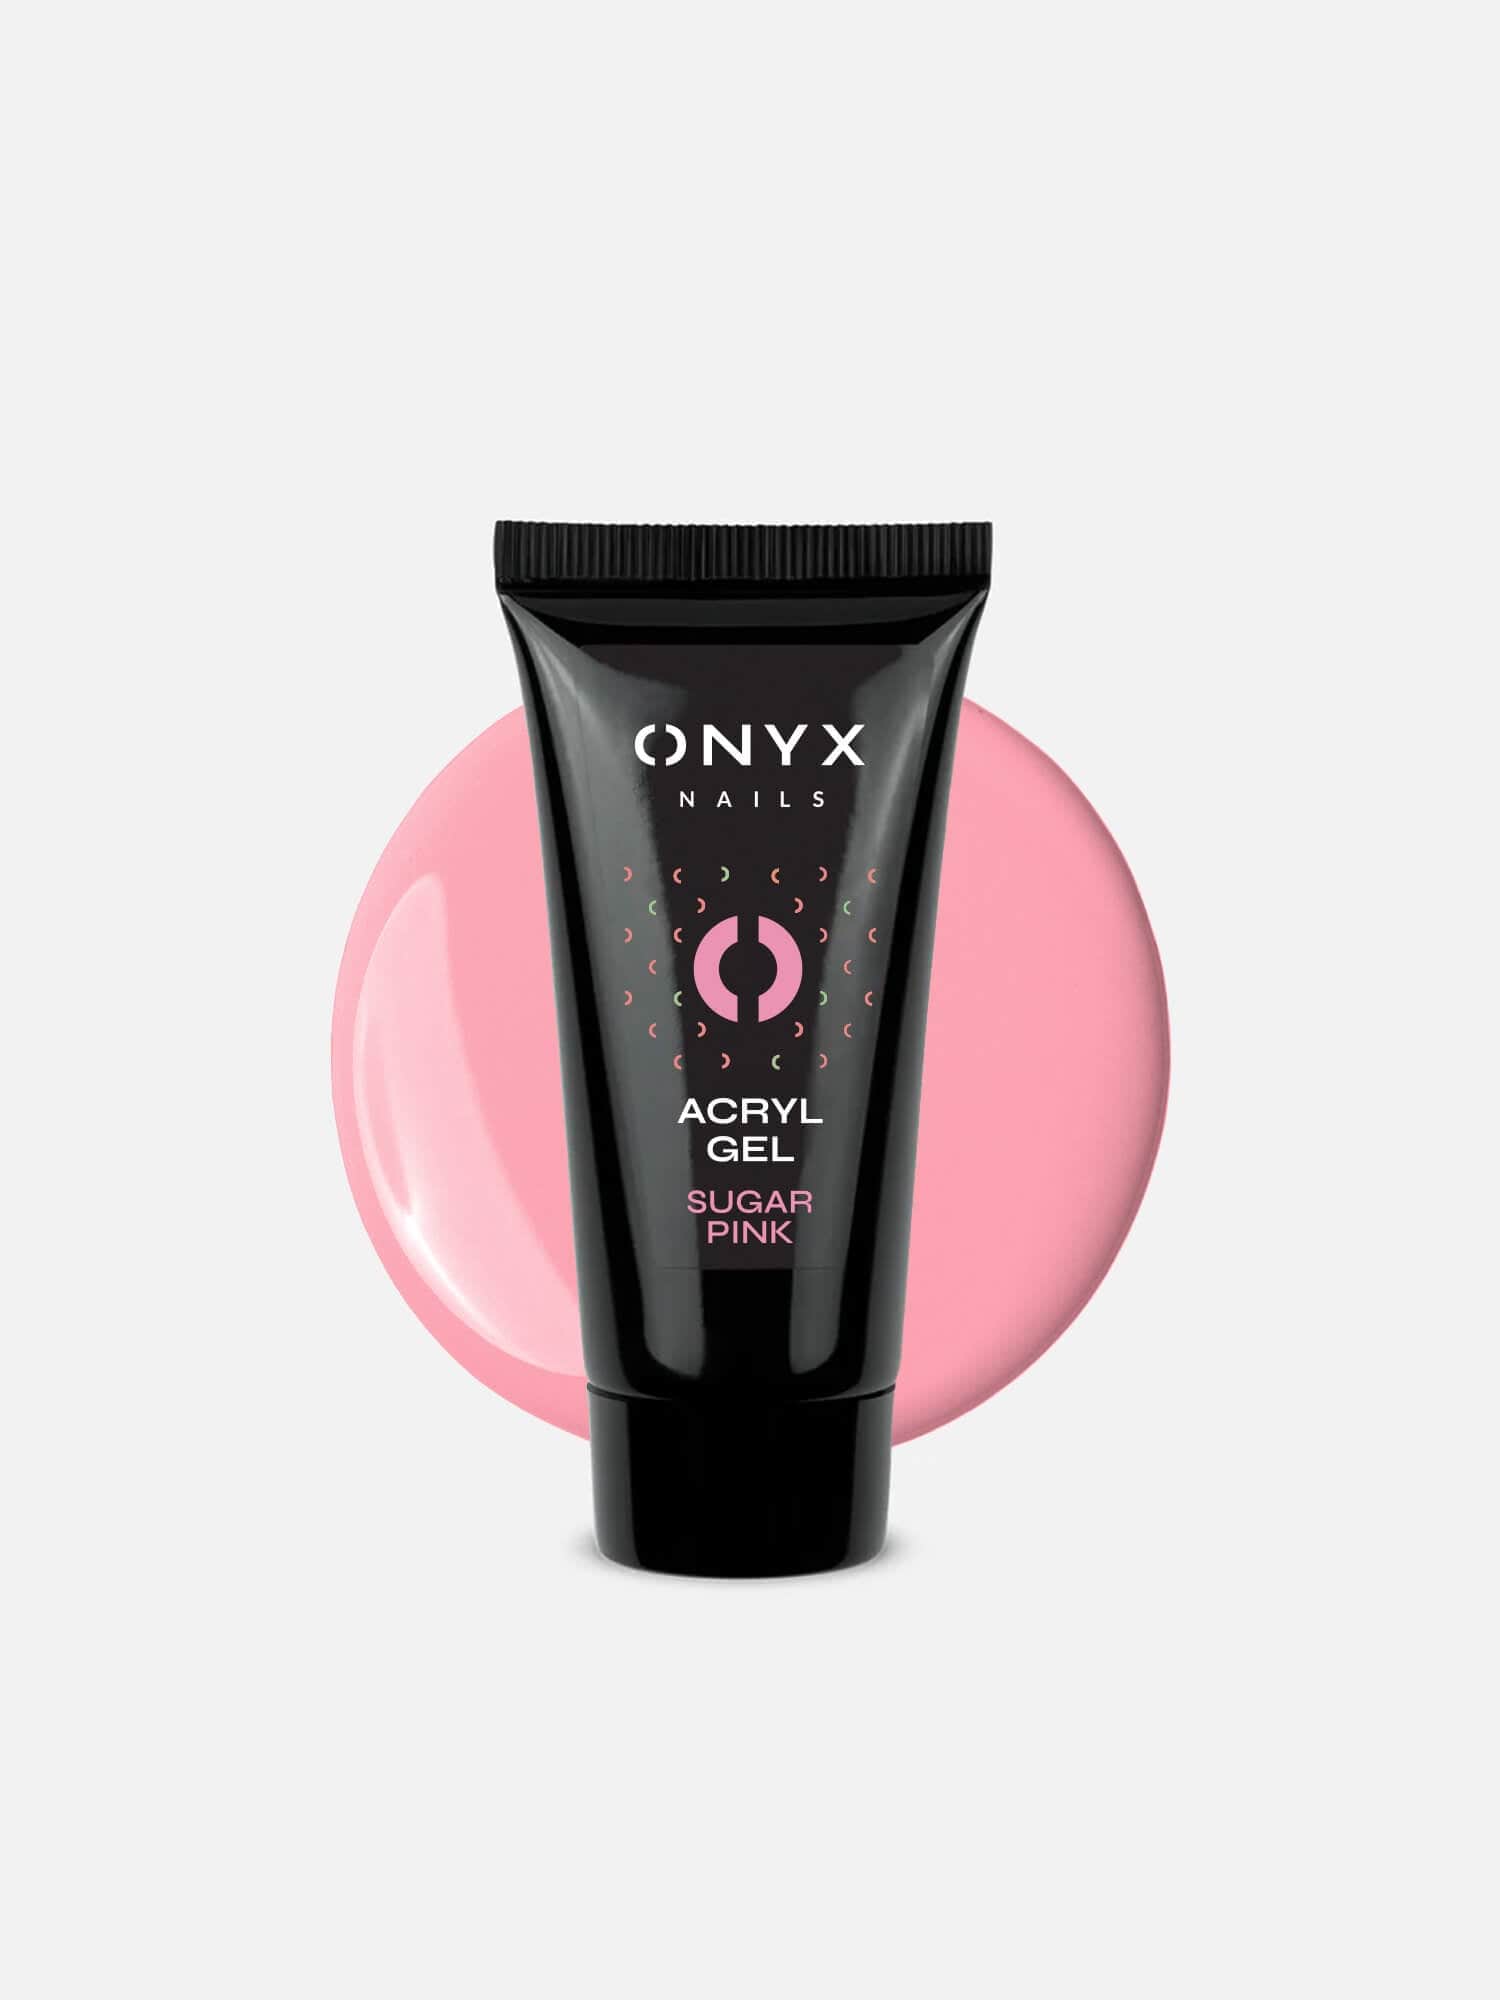 Onyx Nails AcrylGel Sugar Pink 30 g